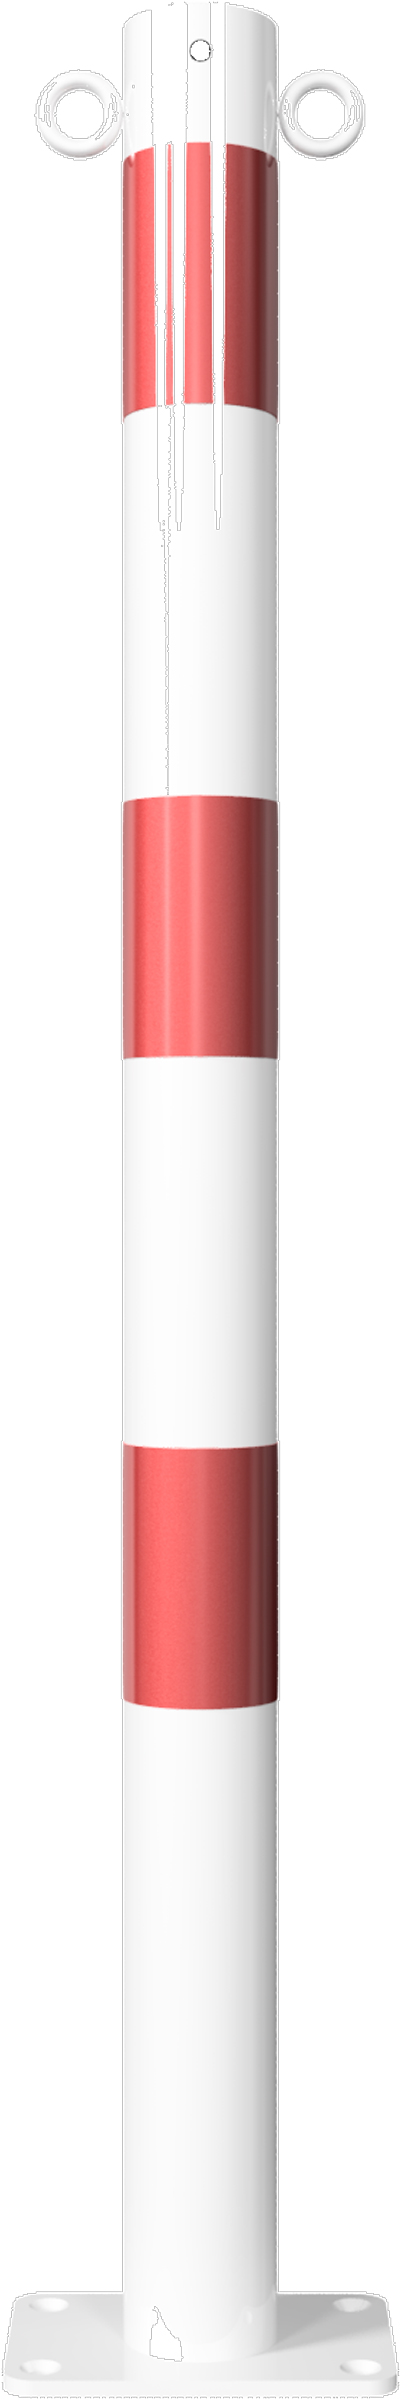 Schake Absperrpfosten OD Ø 60 mm mit 2 Ösen weiß | rot